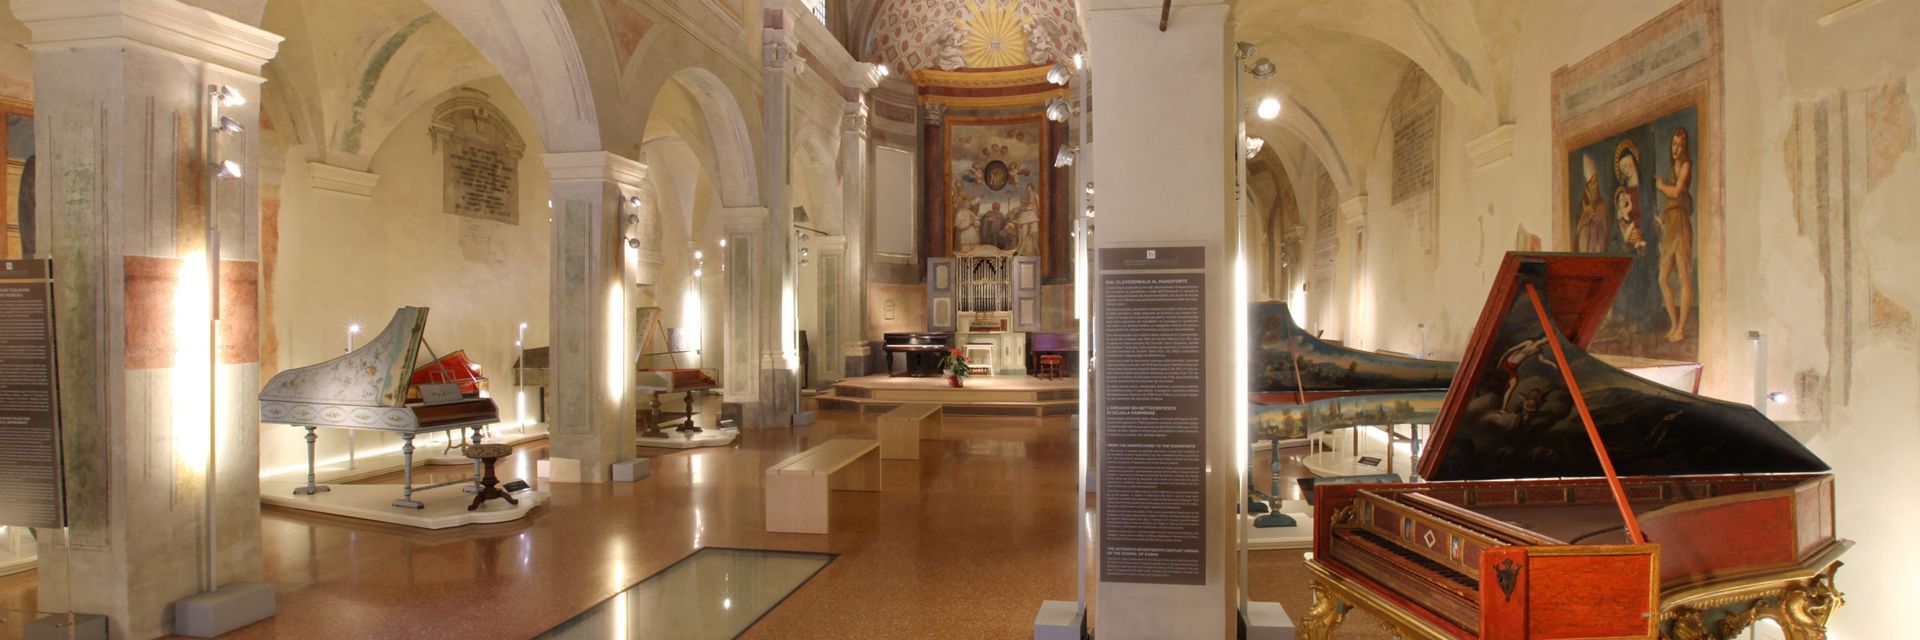 San Colombano - Tagliavini Collection